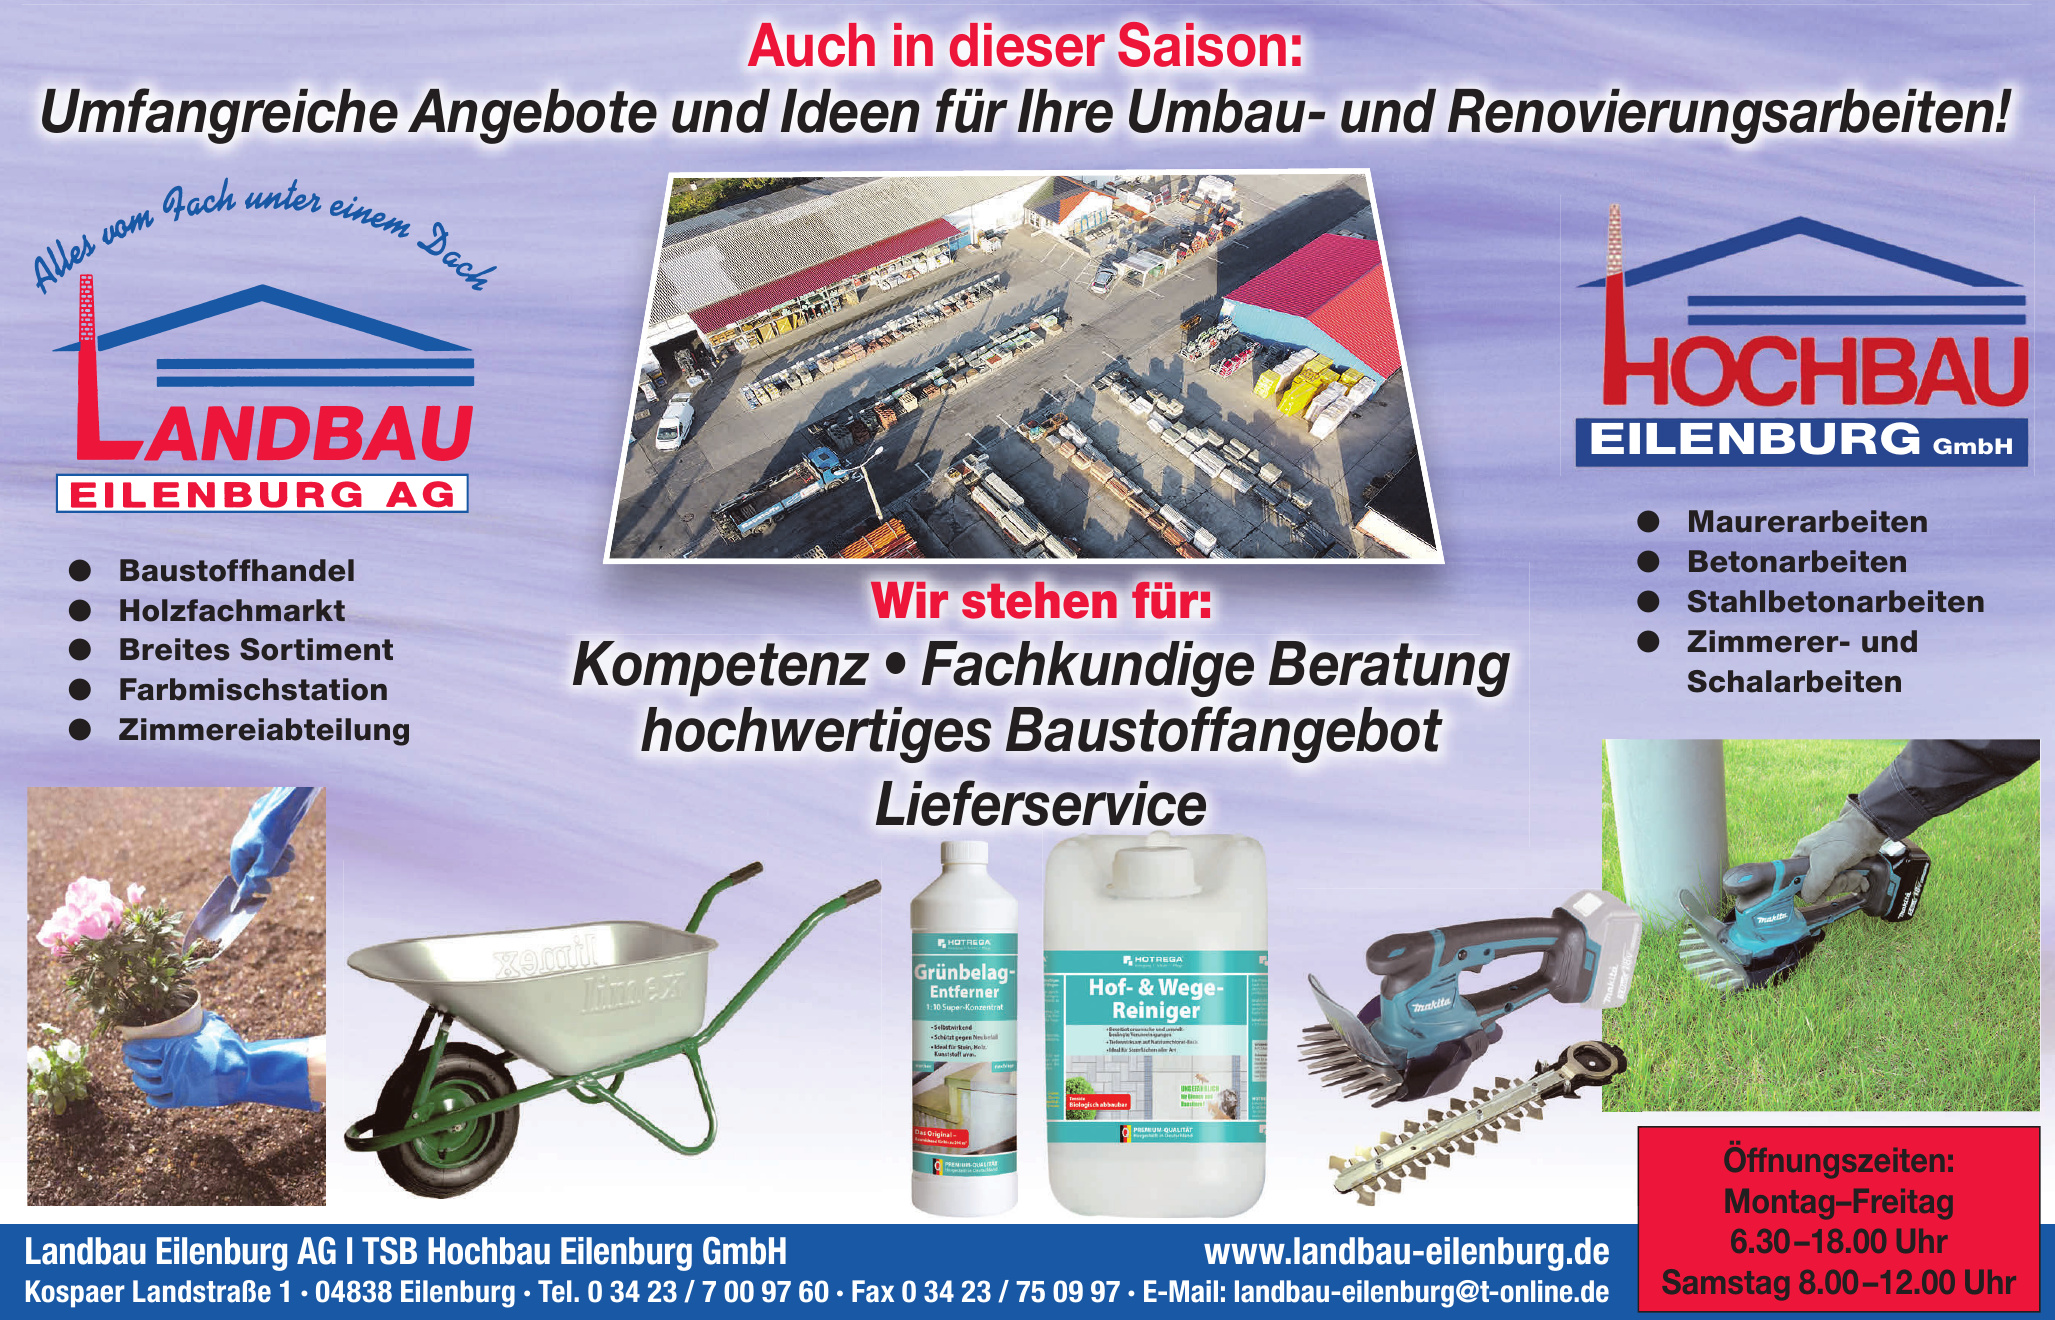 Landbau Eilenburg AG - TSB Hochbau Eilenburg GmbH 